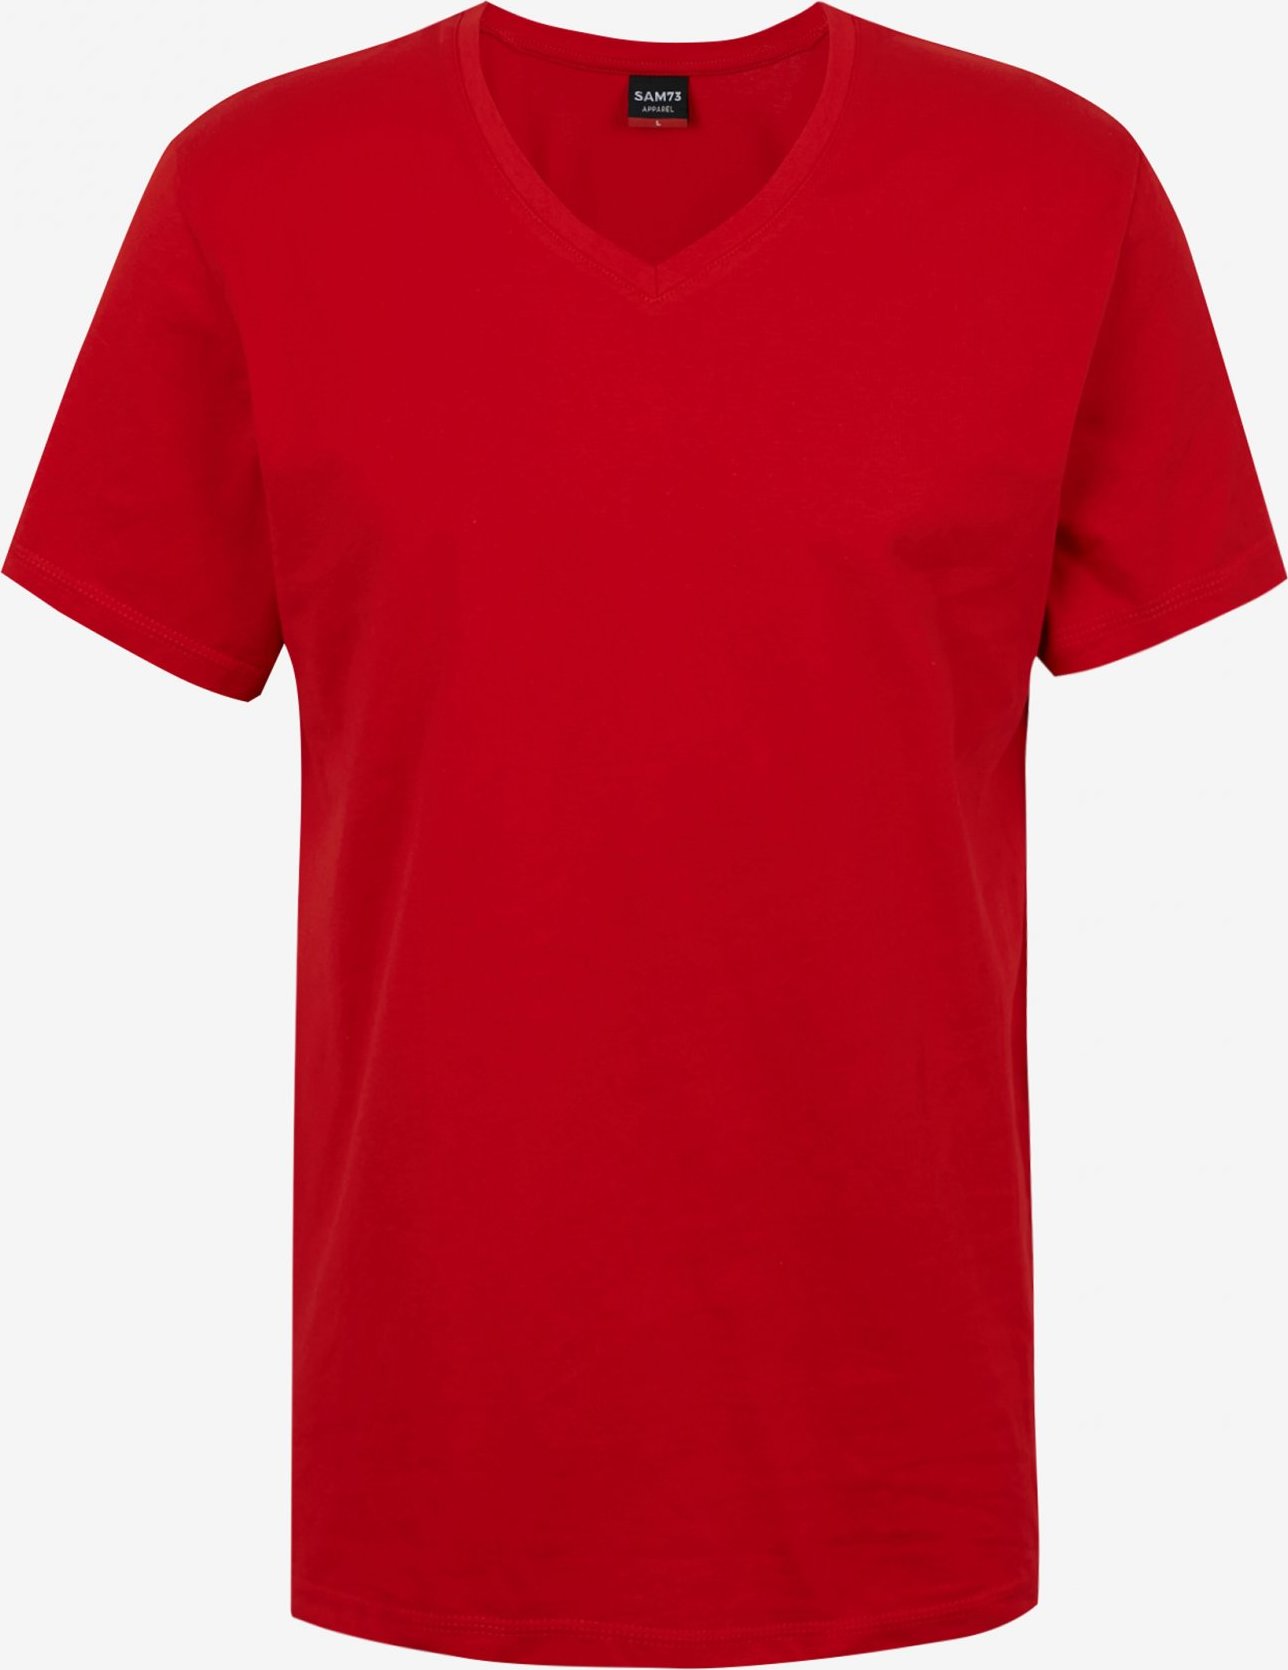 Pánské triko SAM73 blane červené Velikost: L